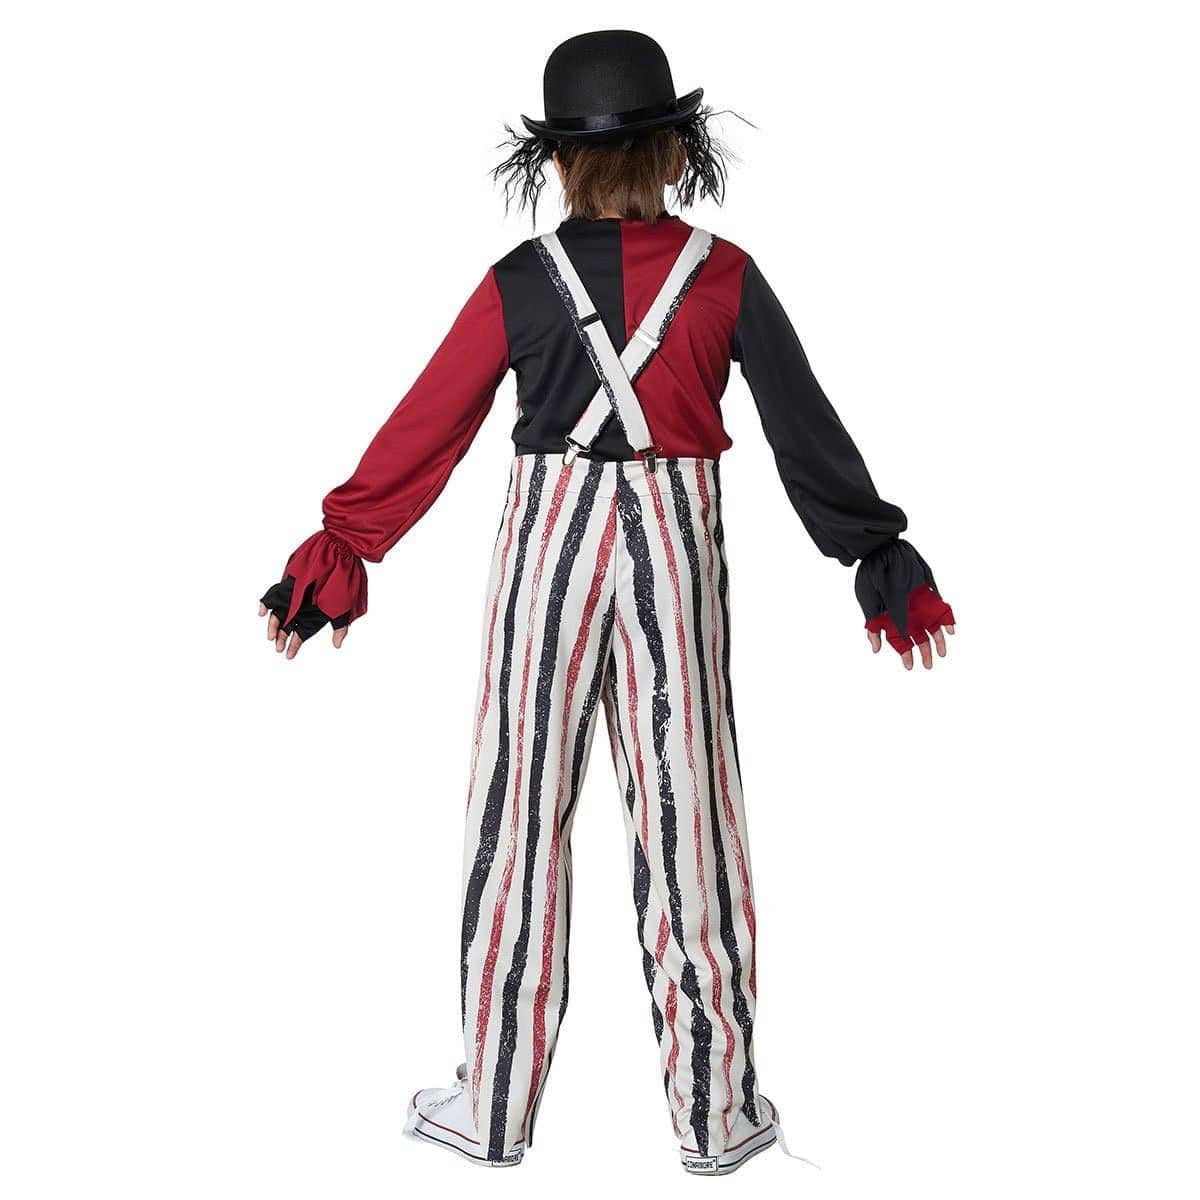 Deguisement Carnaval : Costume De Spanky Le Clown Rayé - Jeux et jouets  RueDeLaFete - Avenue des Jeux